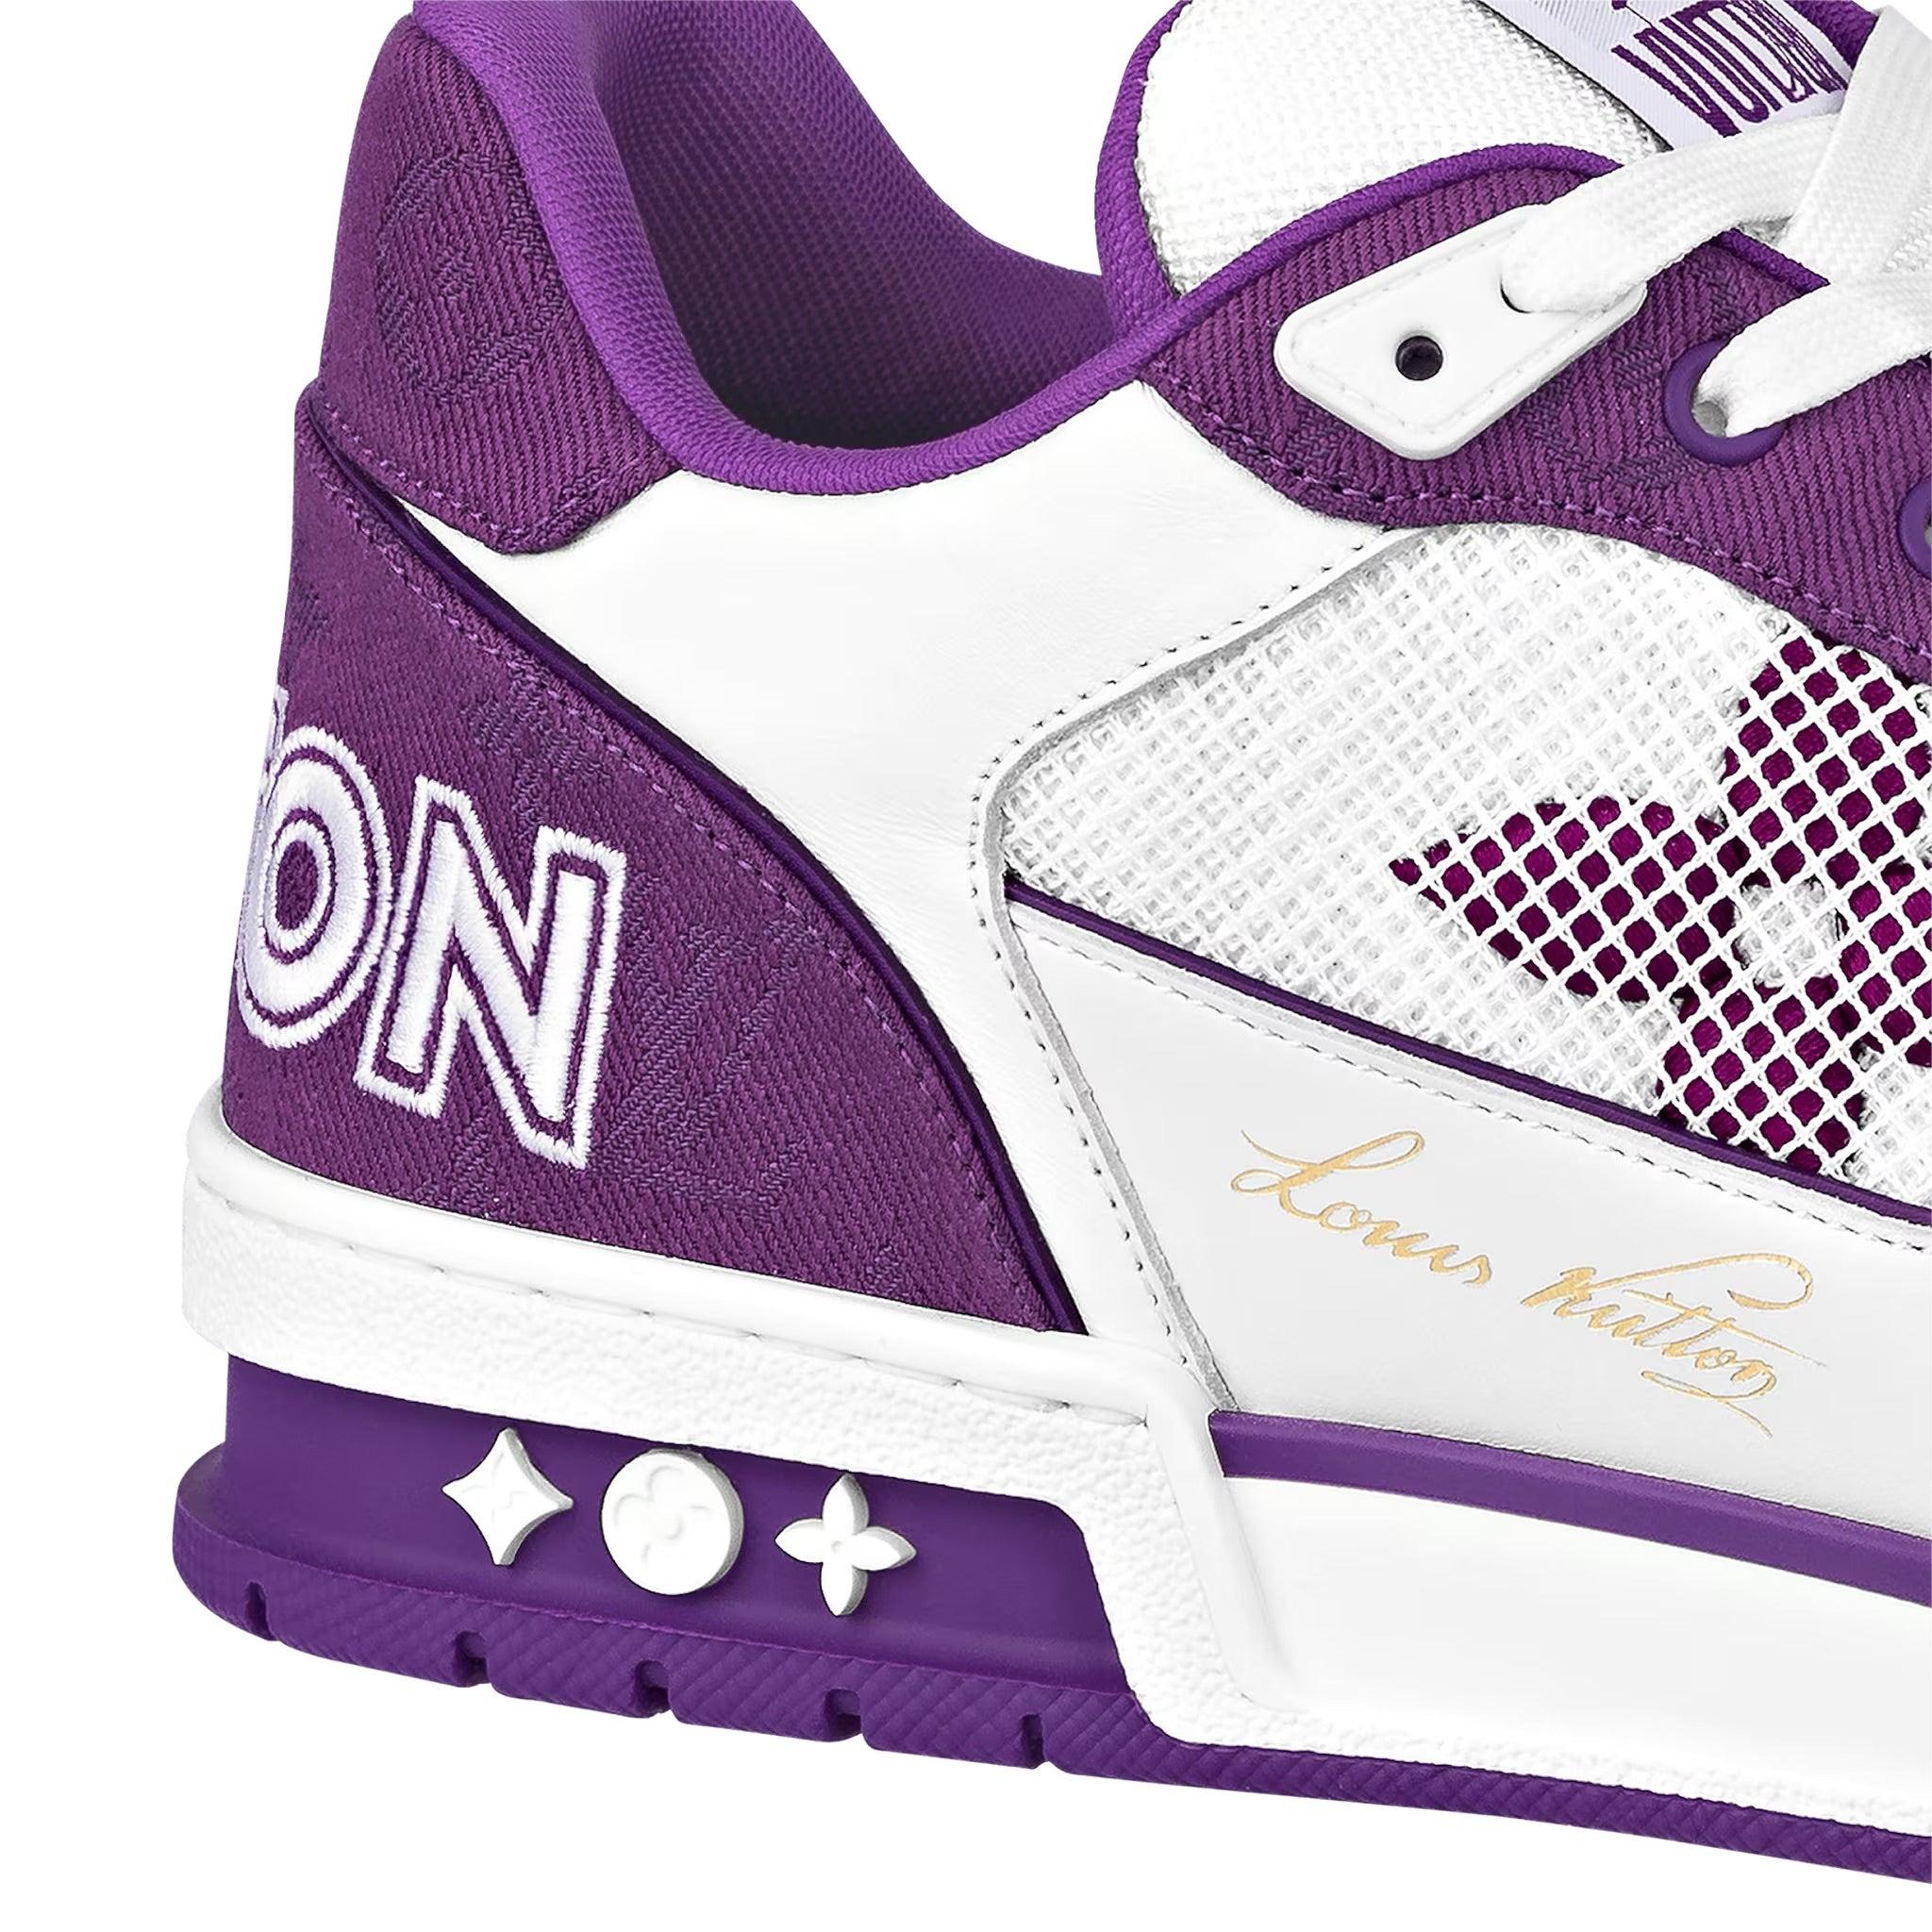 louis vuitton sneakers purple